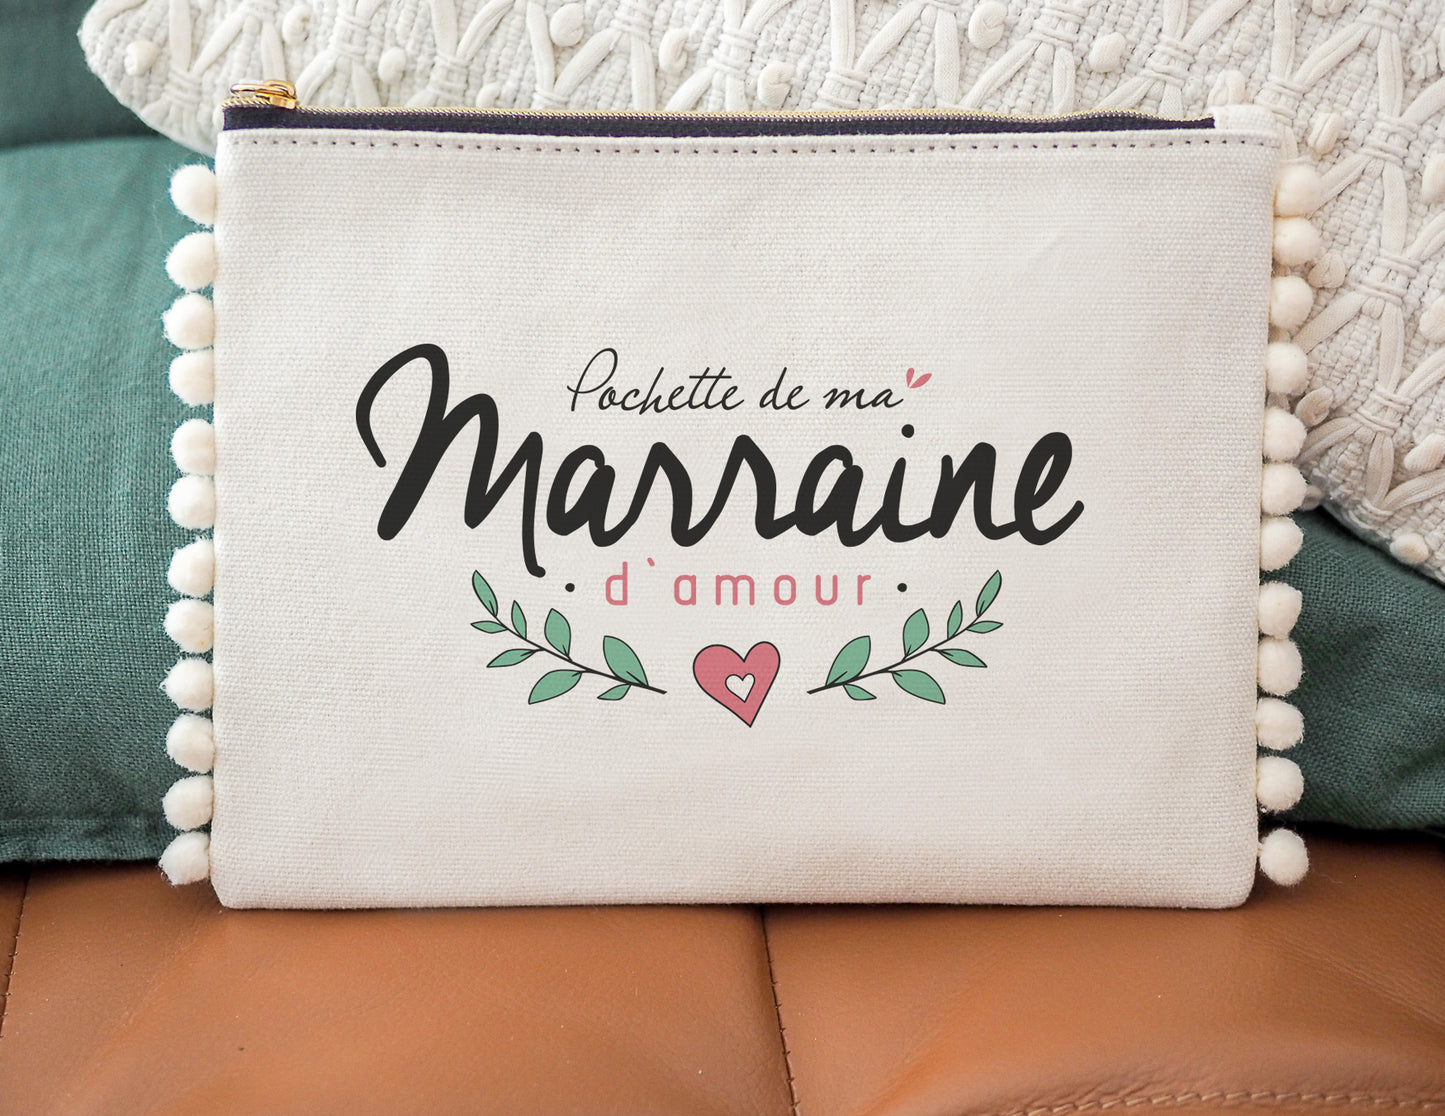 Manahia Pochette Cadeau Marraine - Ma p'tite pochette de marraine de  compet' - 100% Coton - Annonce Future Marraine - Noël Marraine - Trousse de